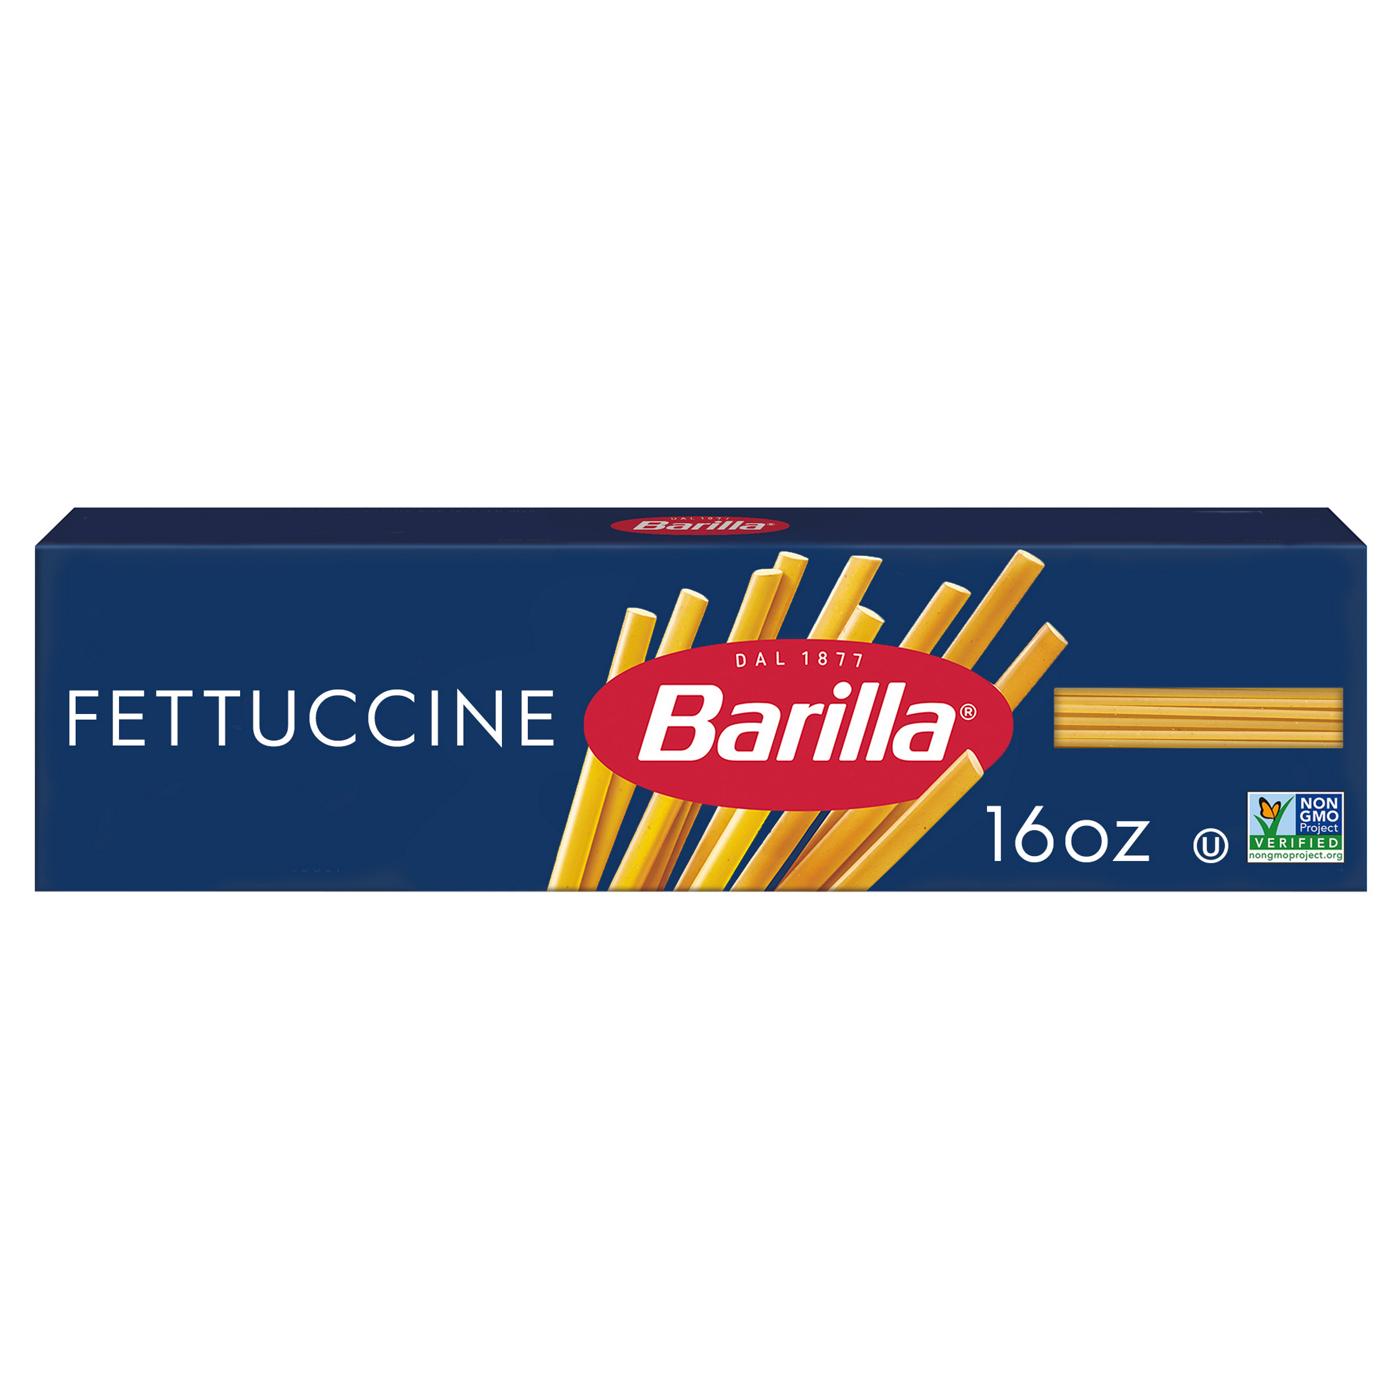 Barilla Fettuccine Pasta - Shop Pasta at H-E-B